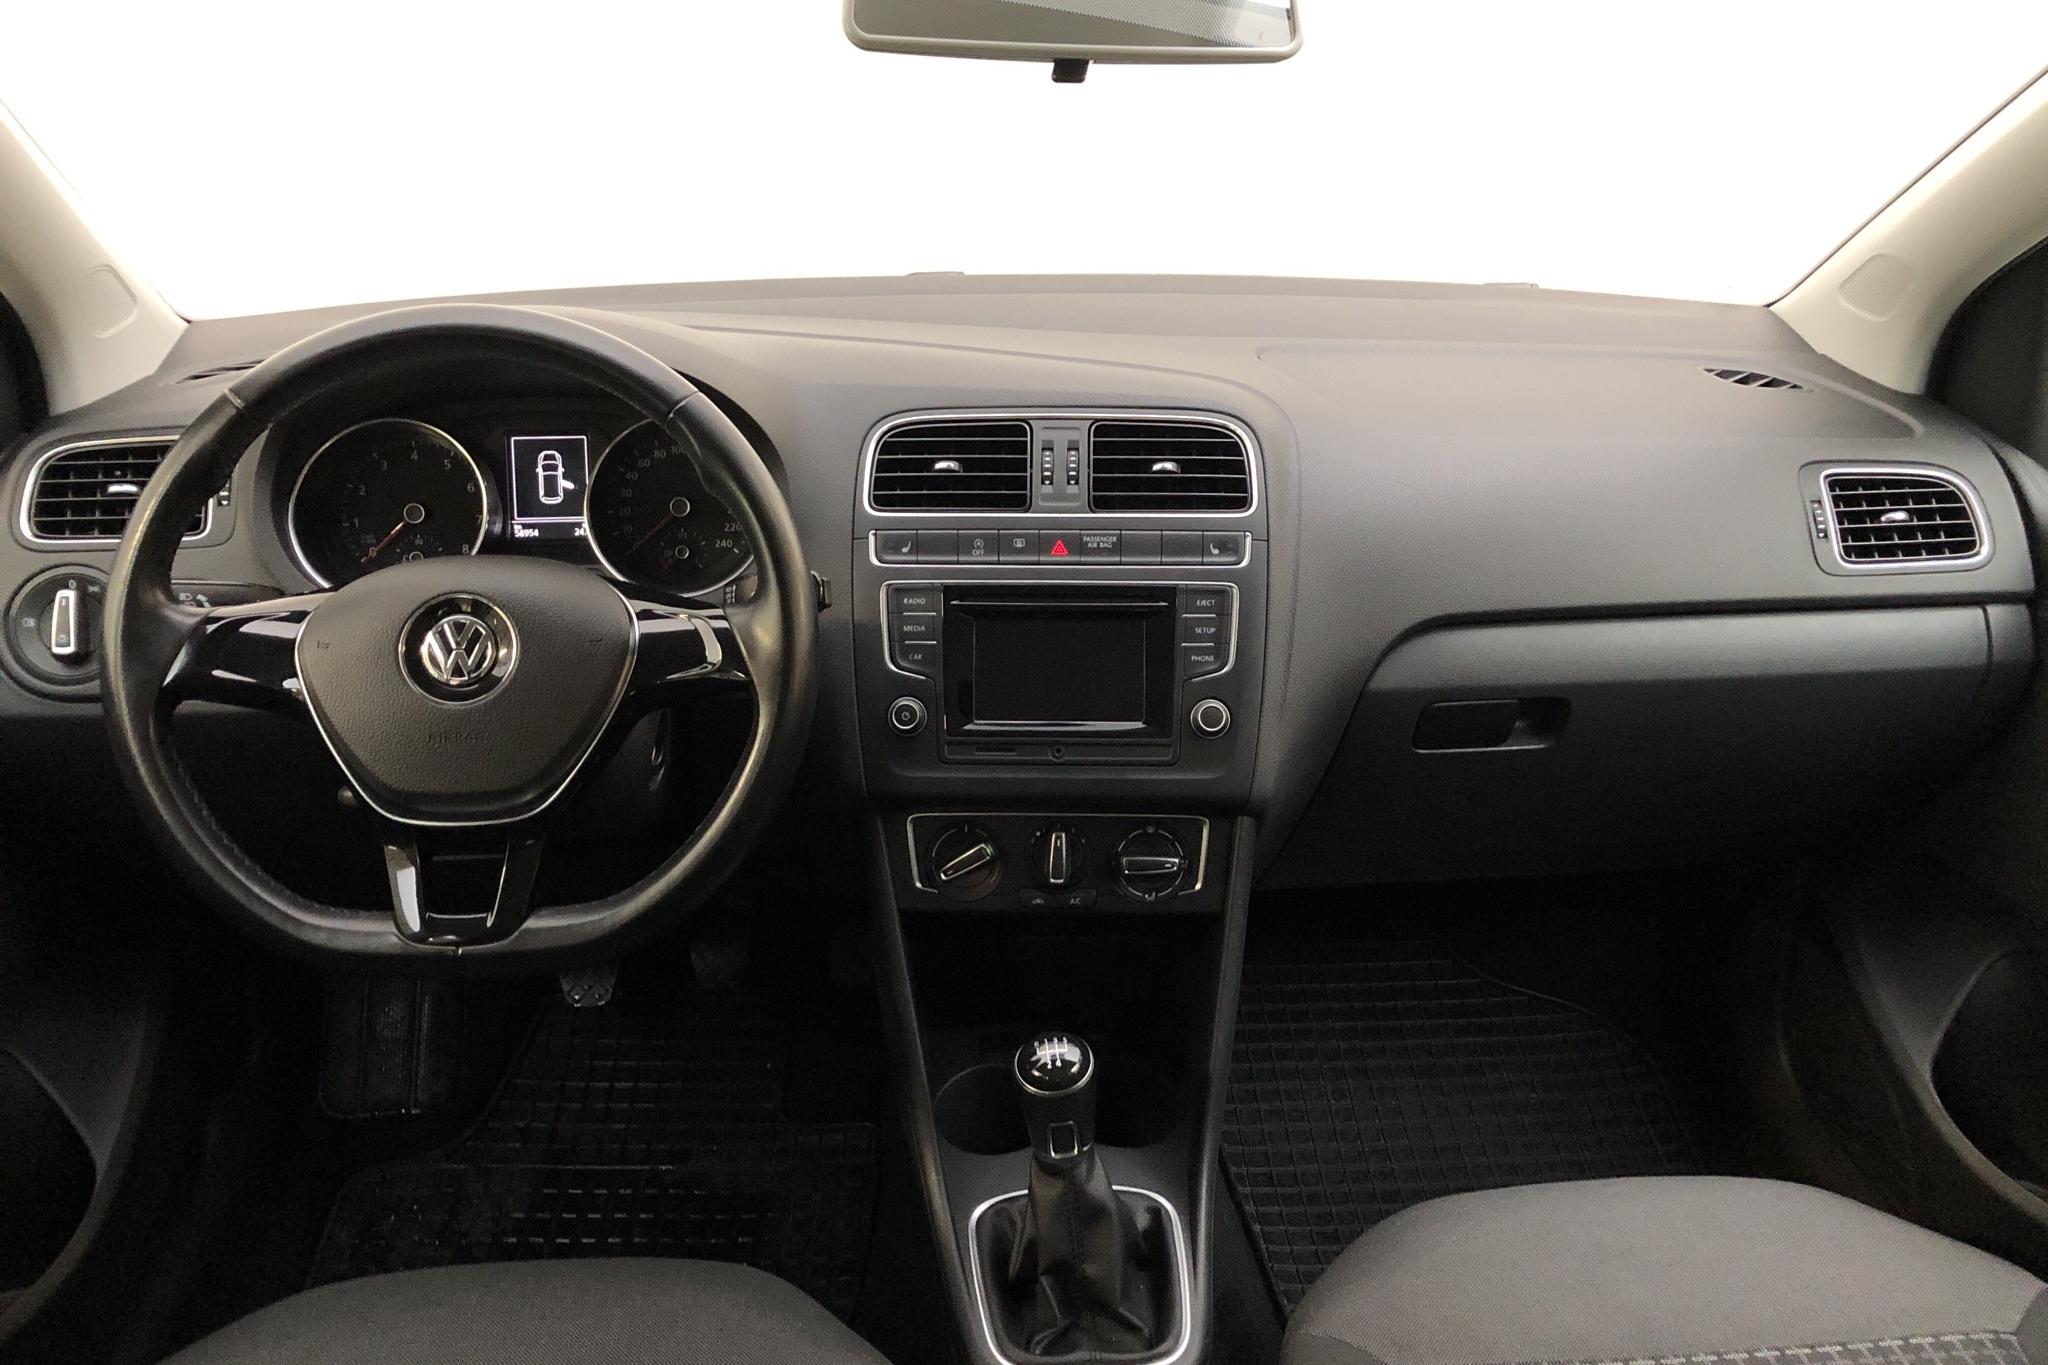 VW Polo 1.2 TSI 5dr (90hk) - 58 950 km - Manual - silver - 2017